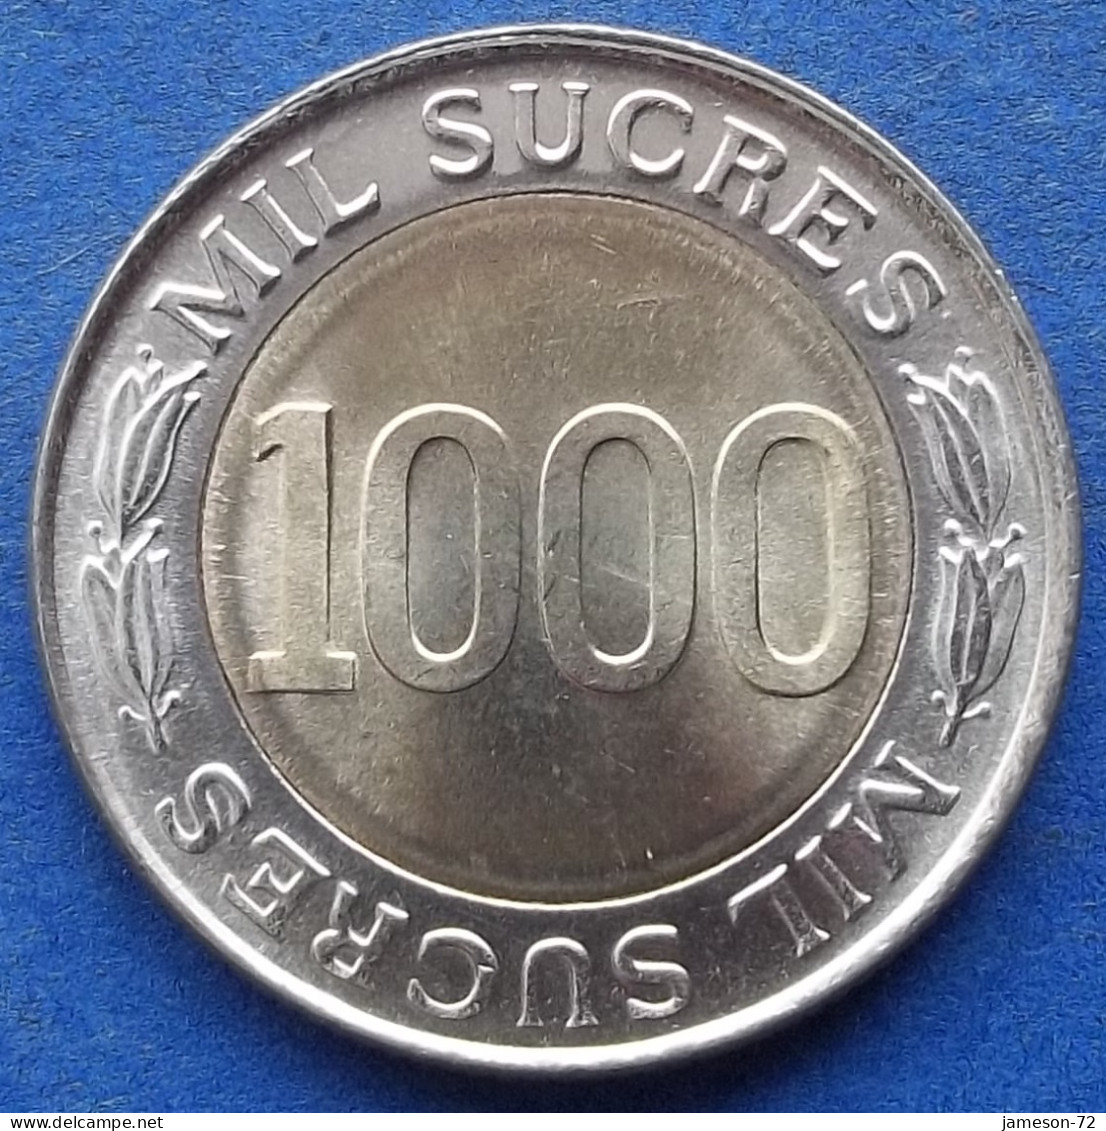 ECUADOR - 1000 Sucres 1997 "Eugenio Espejo" KM# 103 Decimal Coinage (1872-1999) - Edelweiss Coins - Ecuador